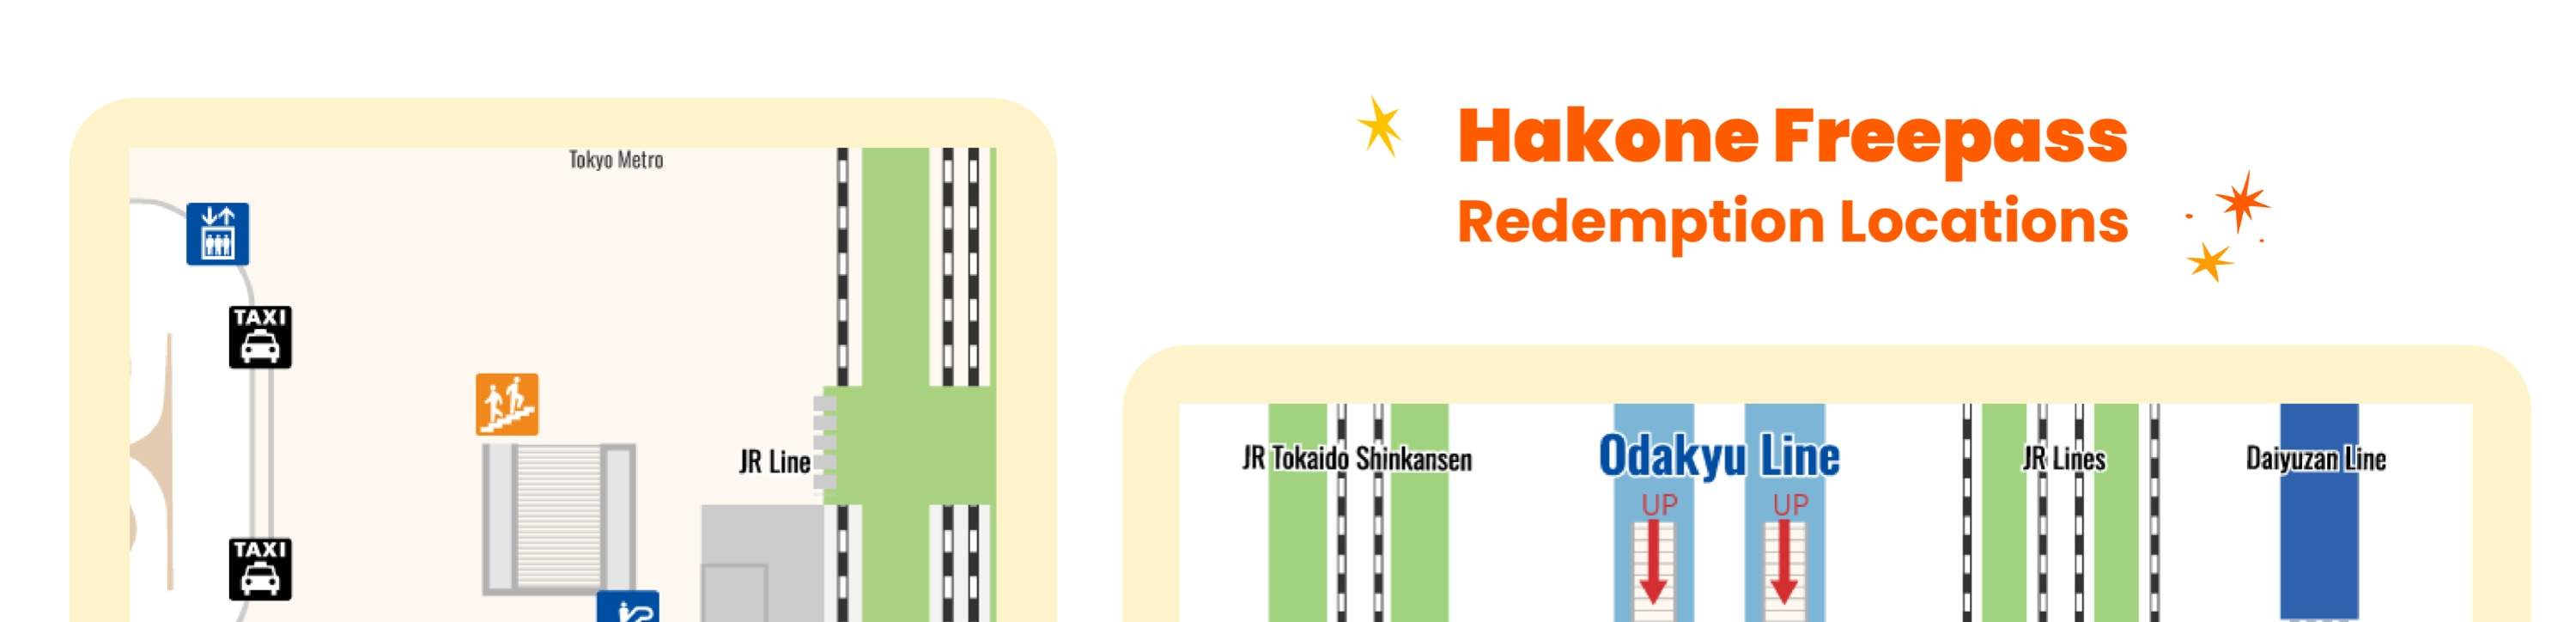 Hakone redemption location